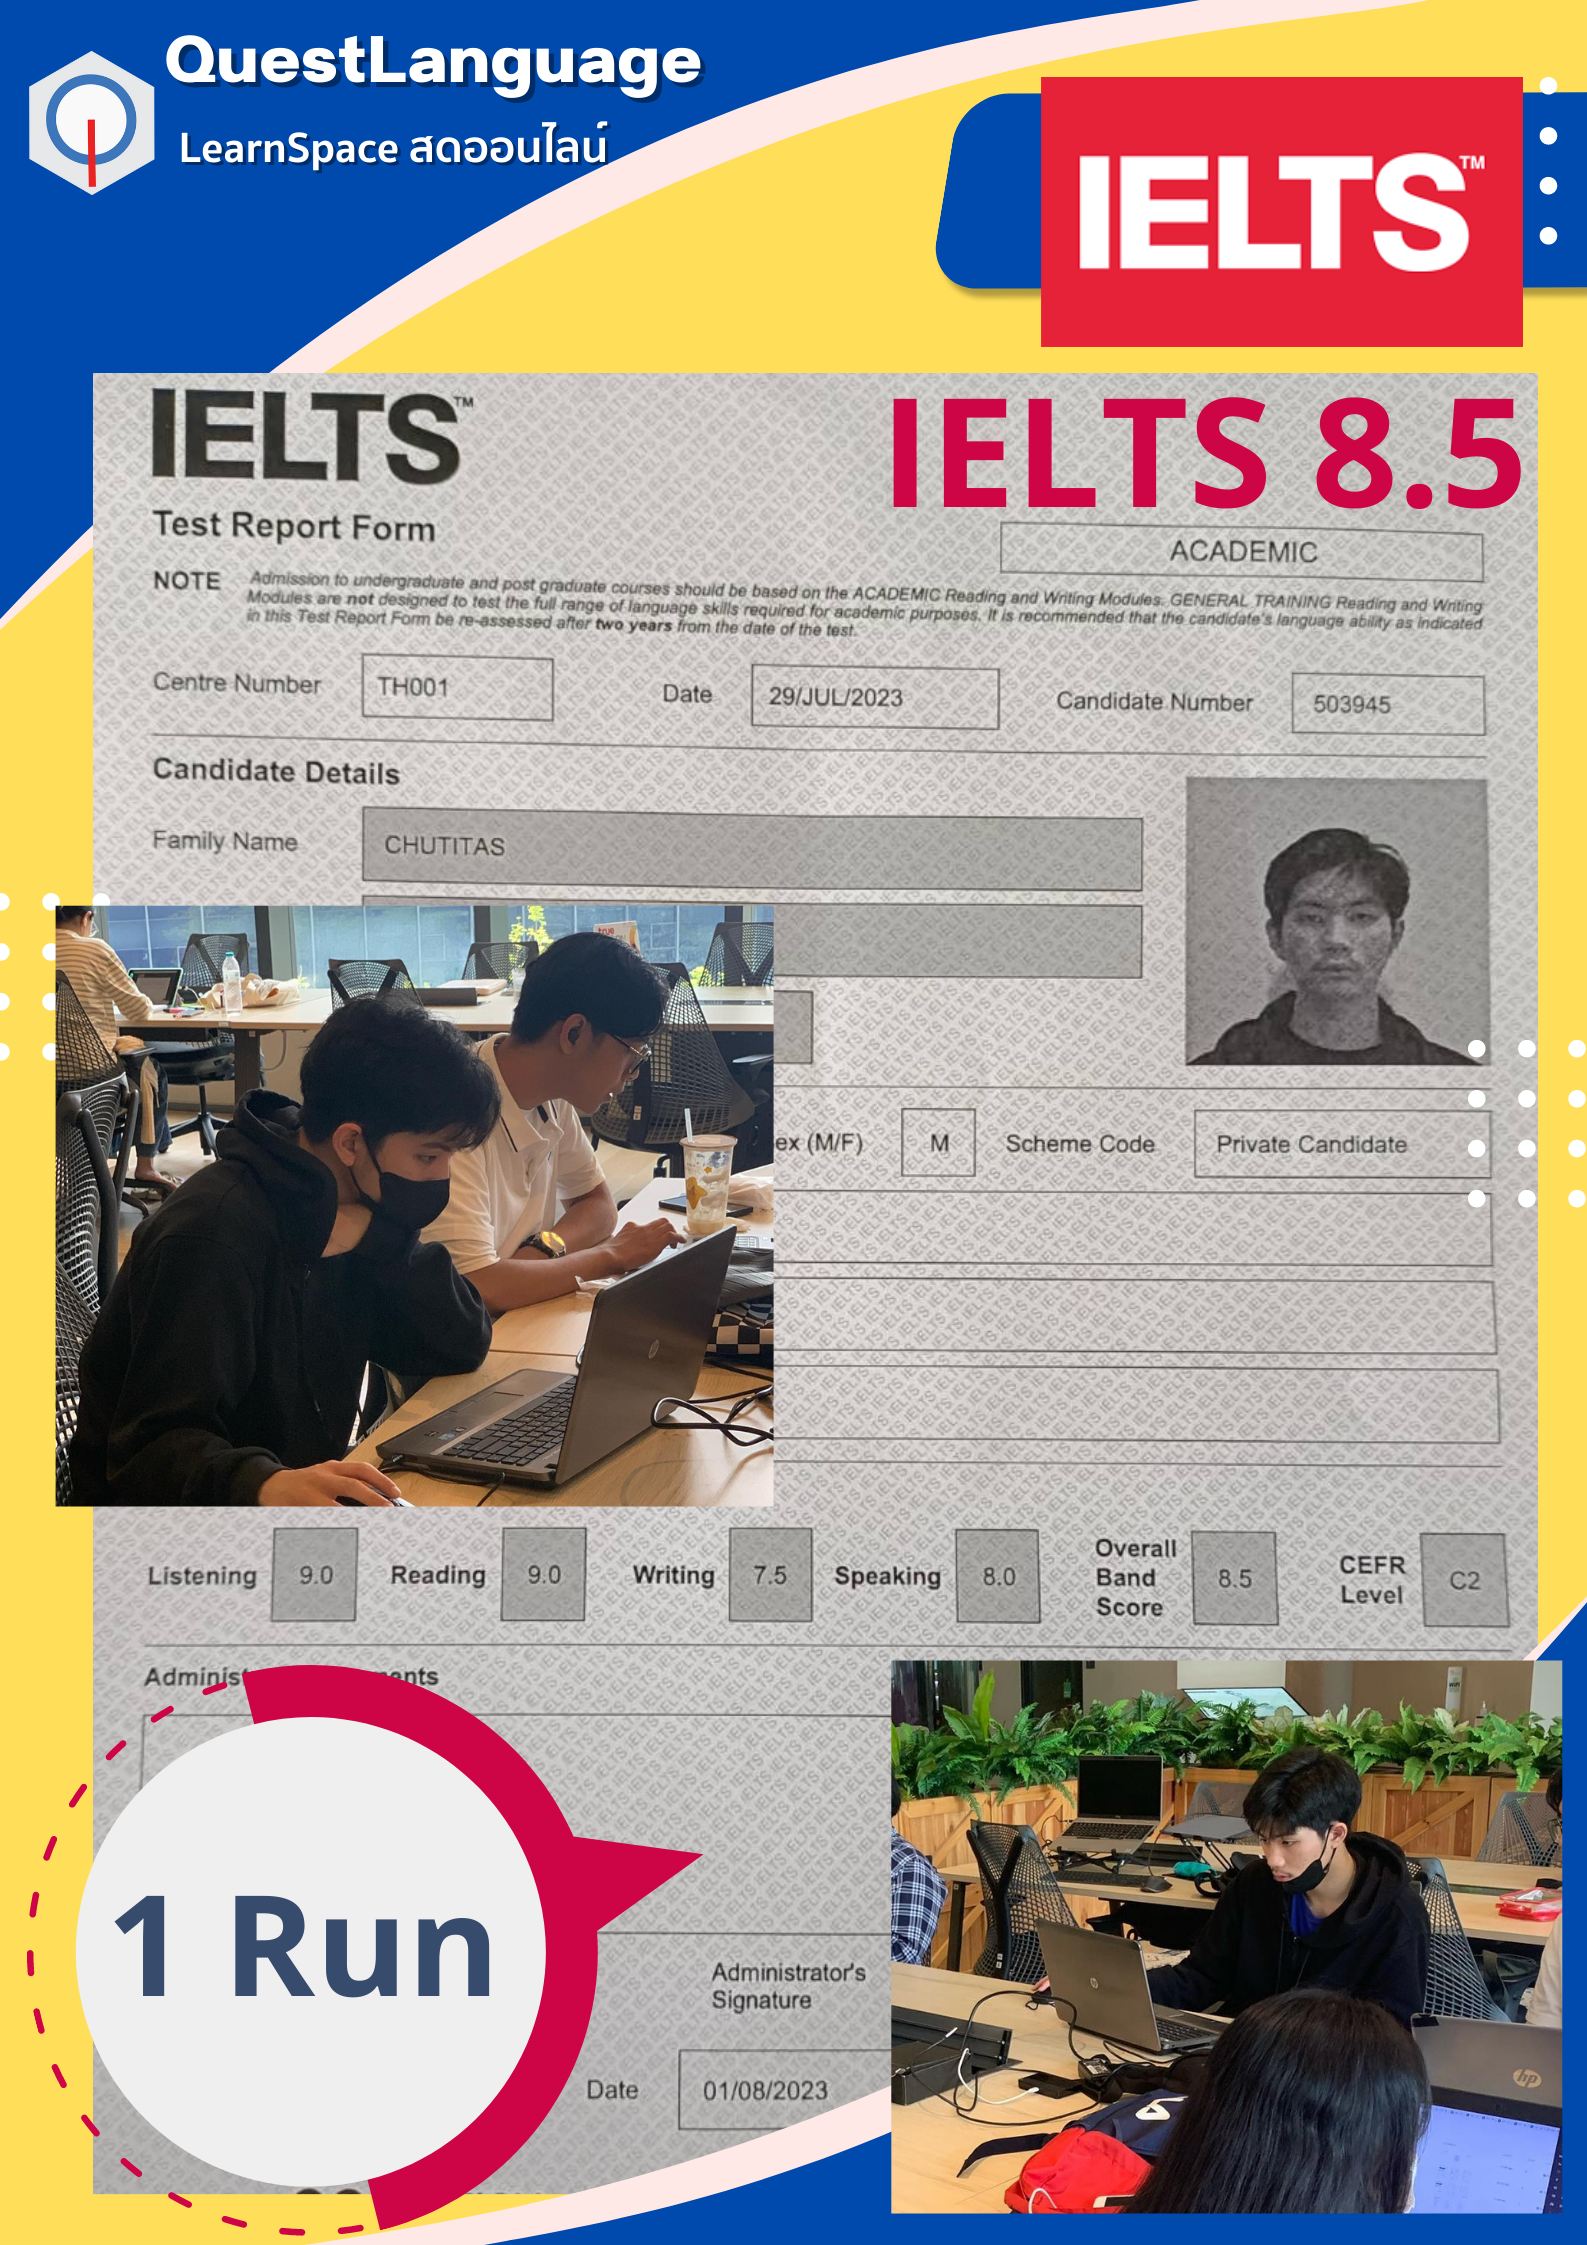 น้องริว นักเรียน โปรแกรมภาคอินเตอร์ กับ โคดดิ้ง full-stack IELTS 8.5